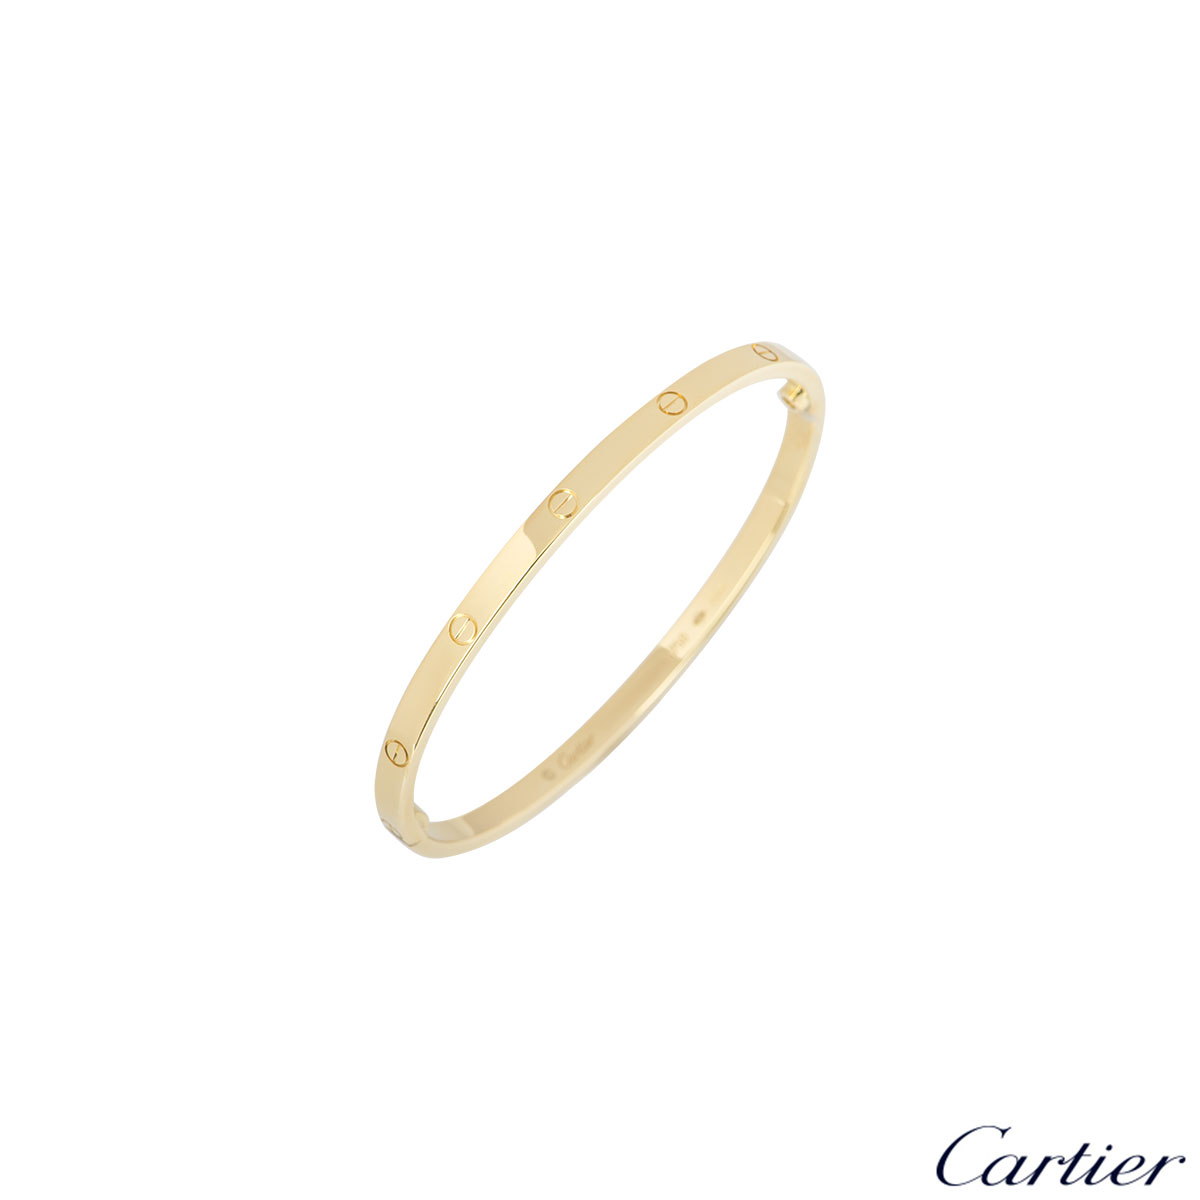 cartier love bracelet size 17 weight